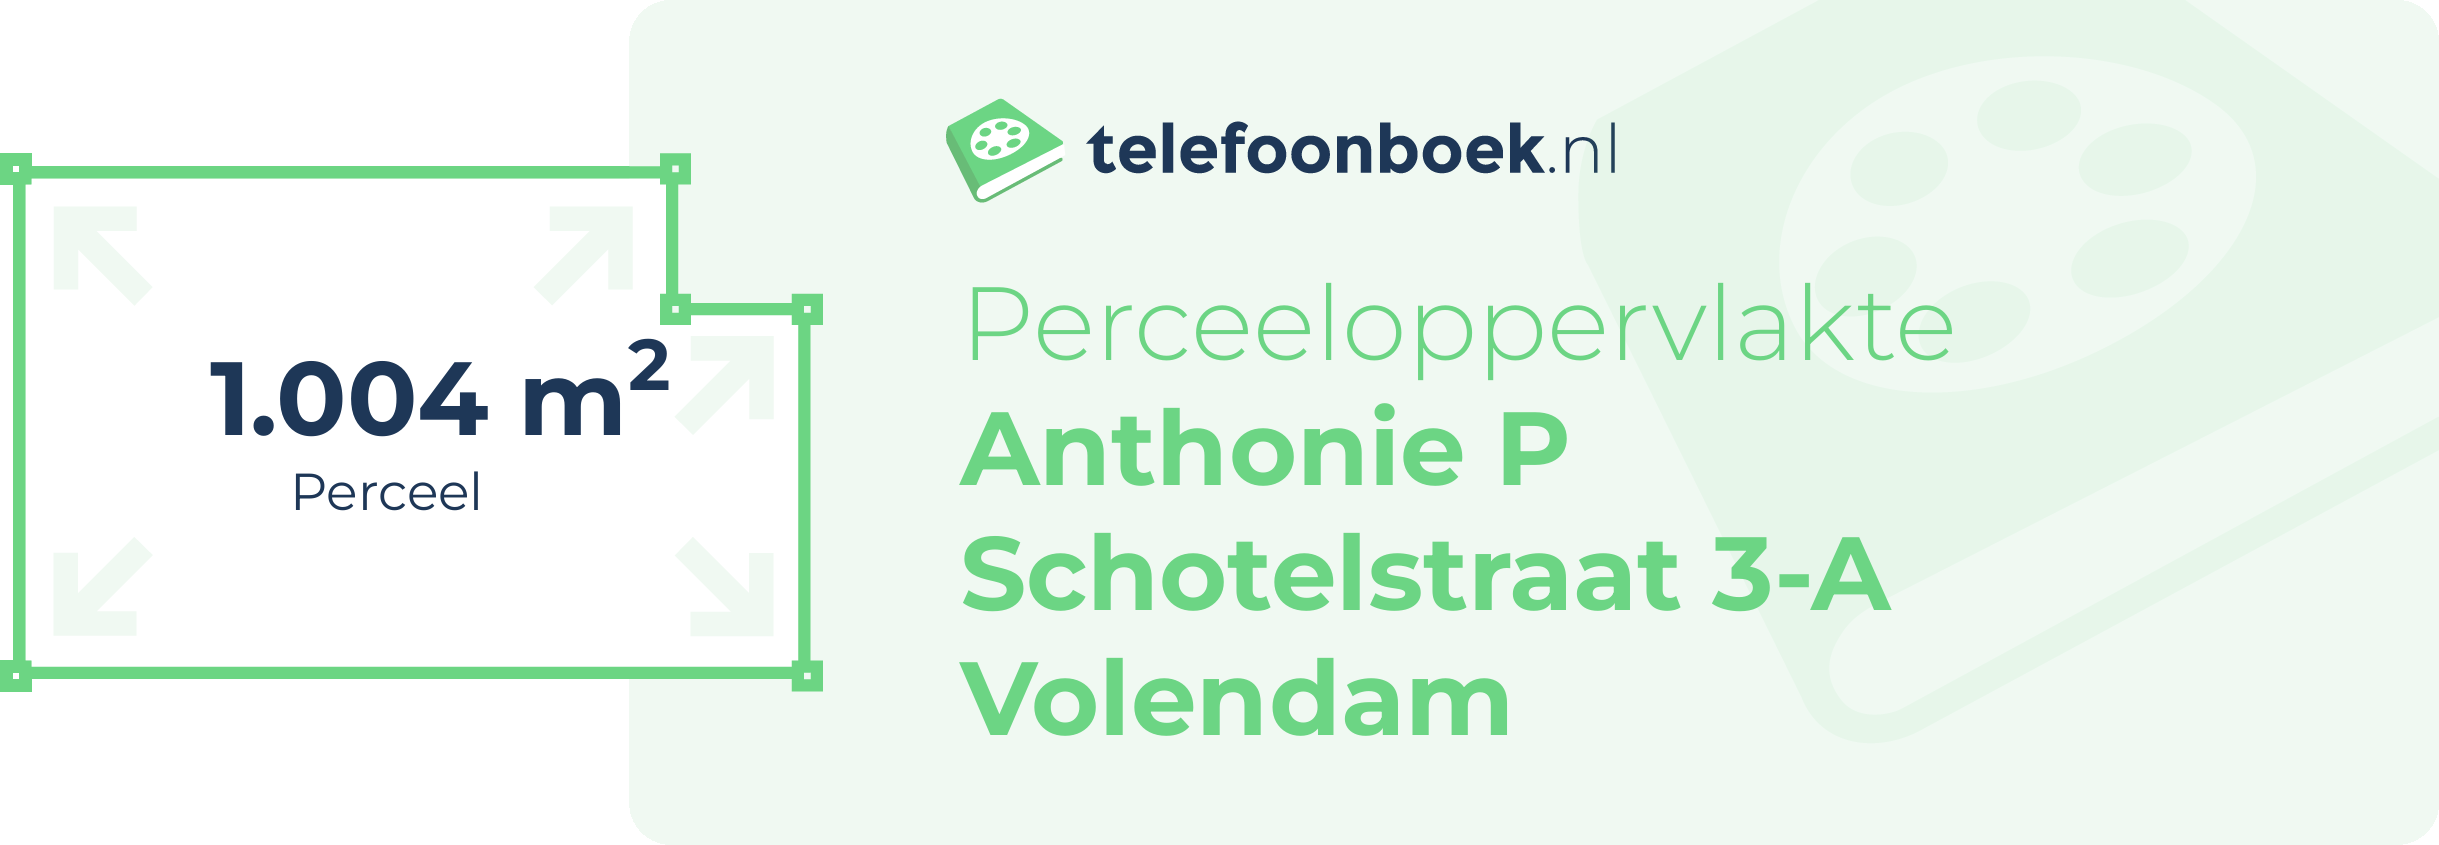 Perceeloppervlakte Anthonie P Schotelstraat 3-A Volendam